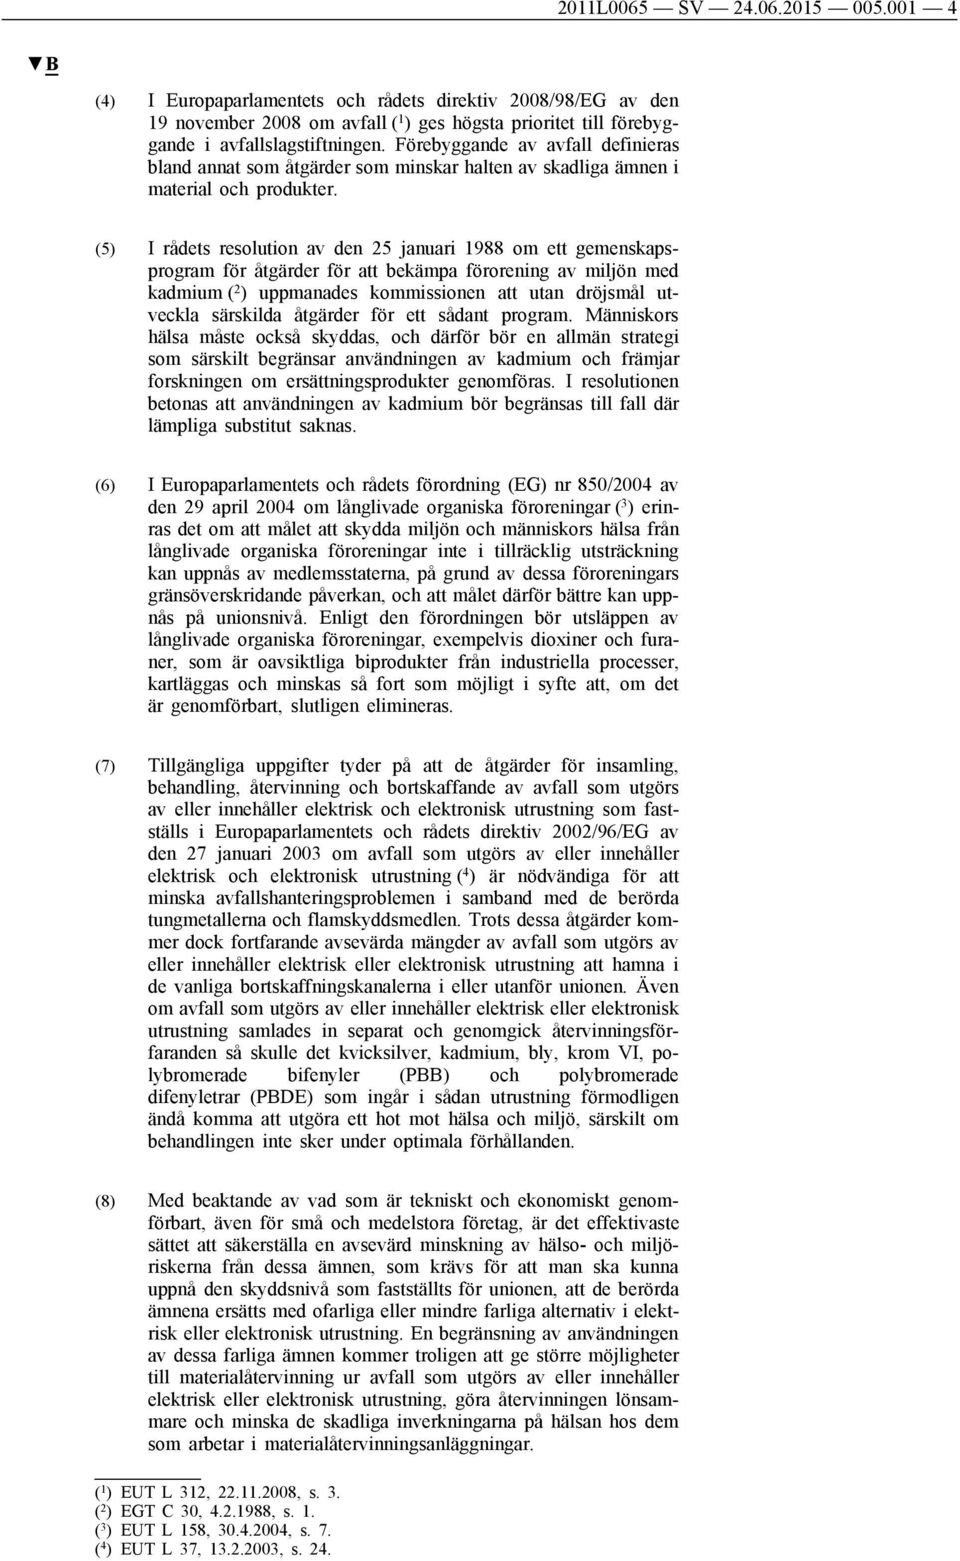 (5) I rådets resolution av den 25 januari 1988 om ett gemenskapsprogram för åtgärder för att bekämpa förorening av miljön med kadmium ( 2 ) uppmanades kommissionen att utan dröjsmål utveckla